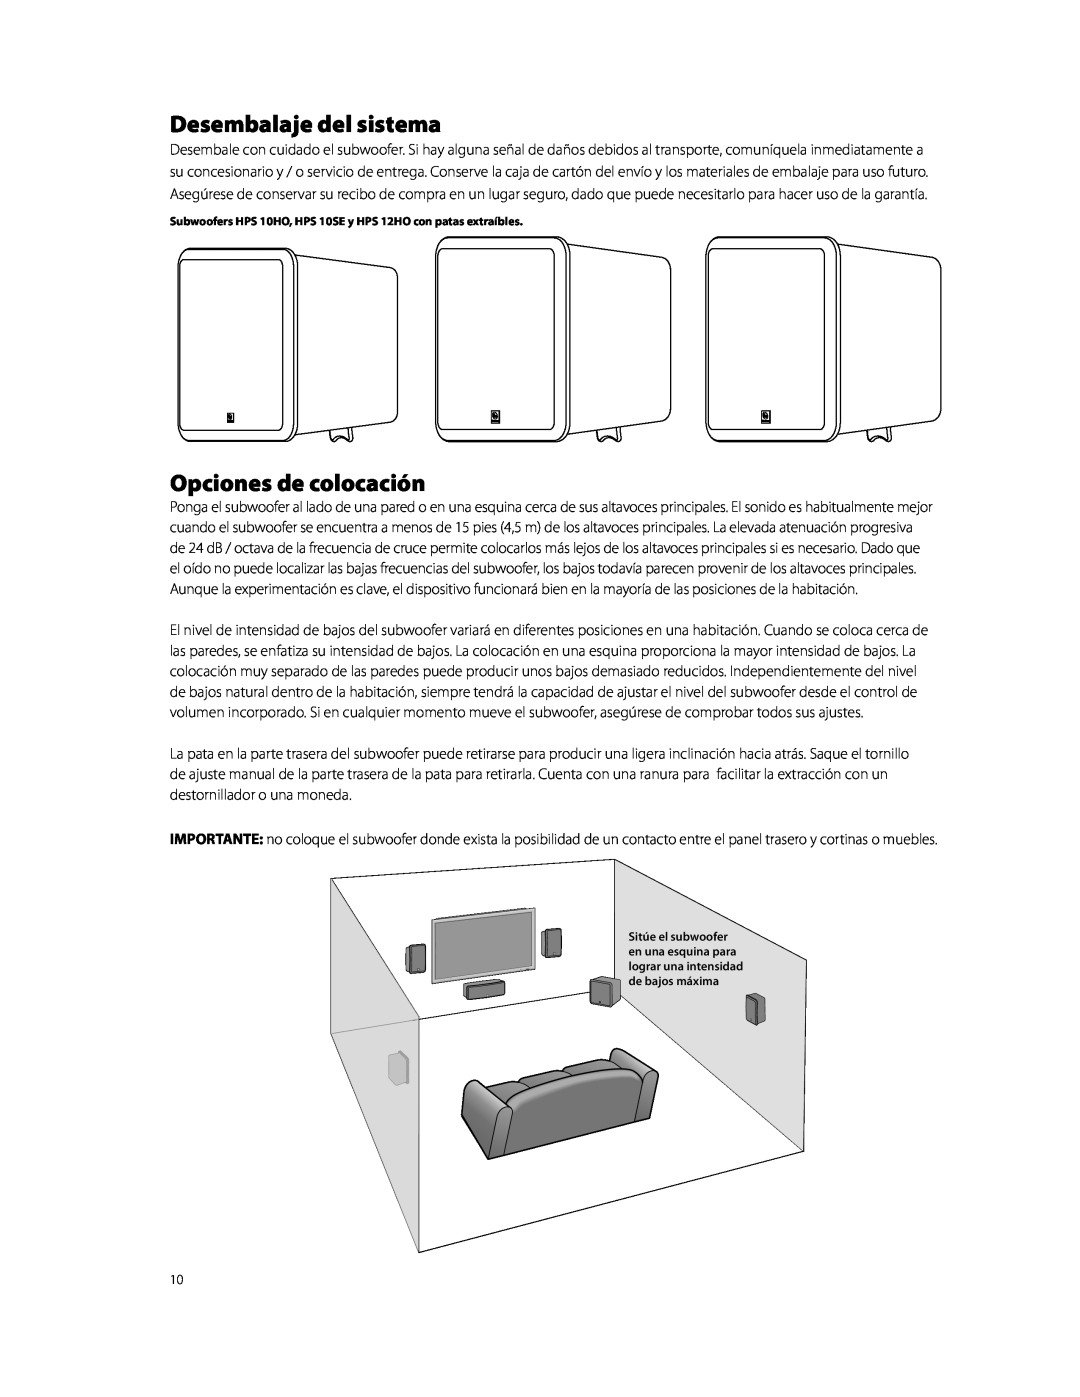 Boston Acoustics HPS10HO owner manual Desembalaje del sistema, Opciones de colocación 